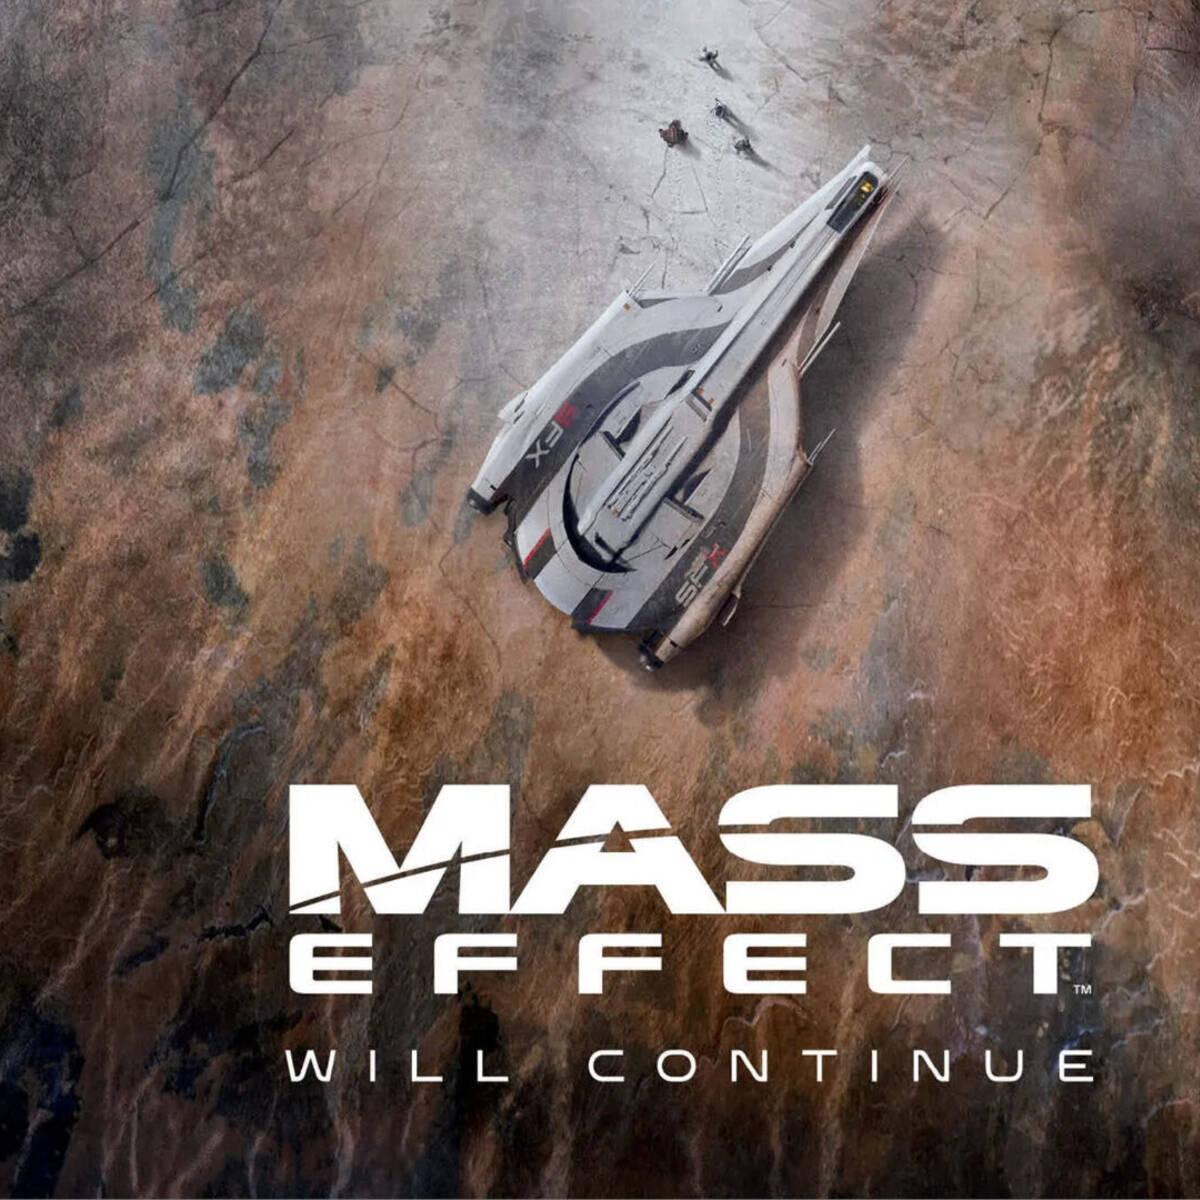 Масс эффект 4 Постер. Масс эффект 5 Постер. Mass Effect will continue Постер. Следующий Mass Effect Постер.